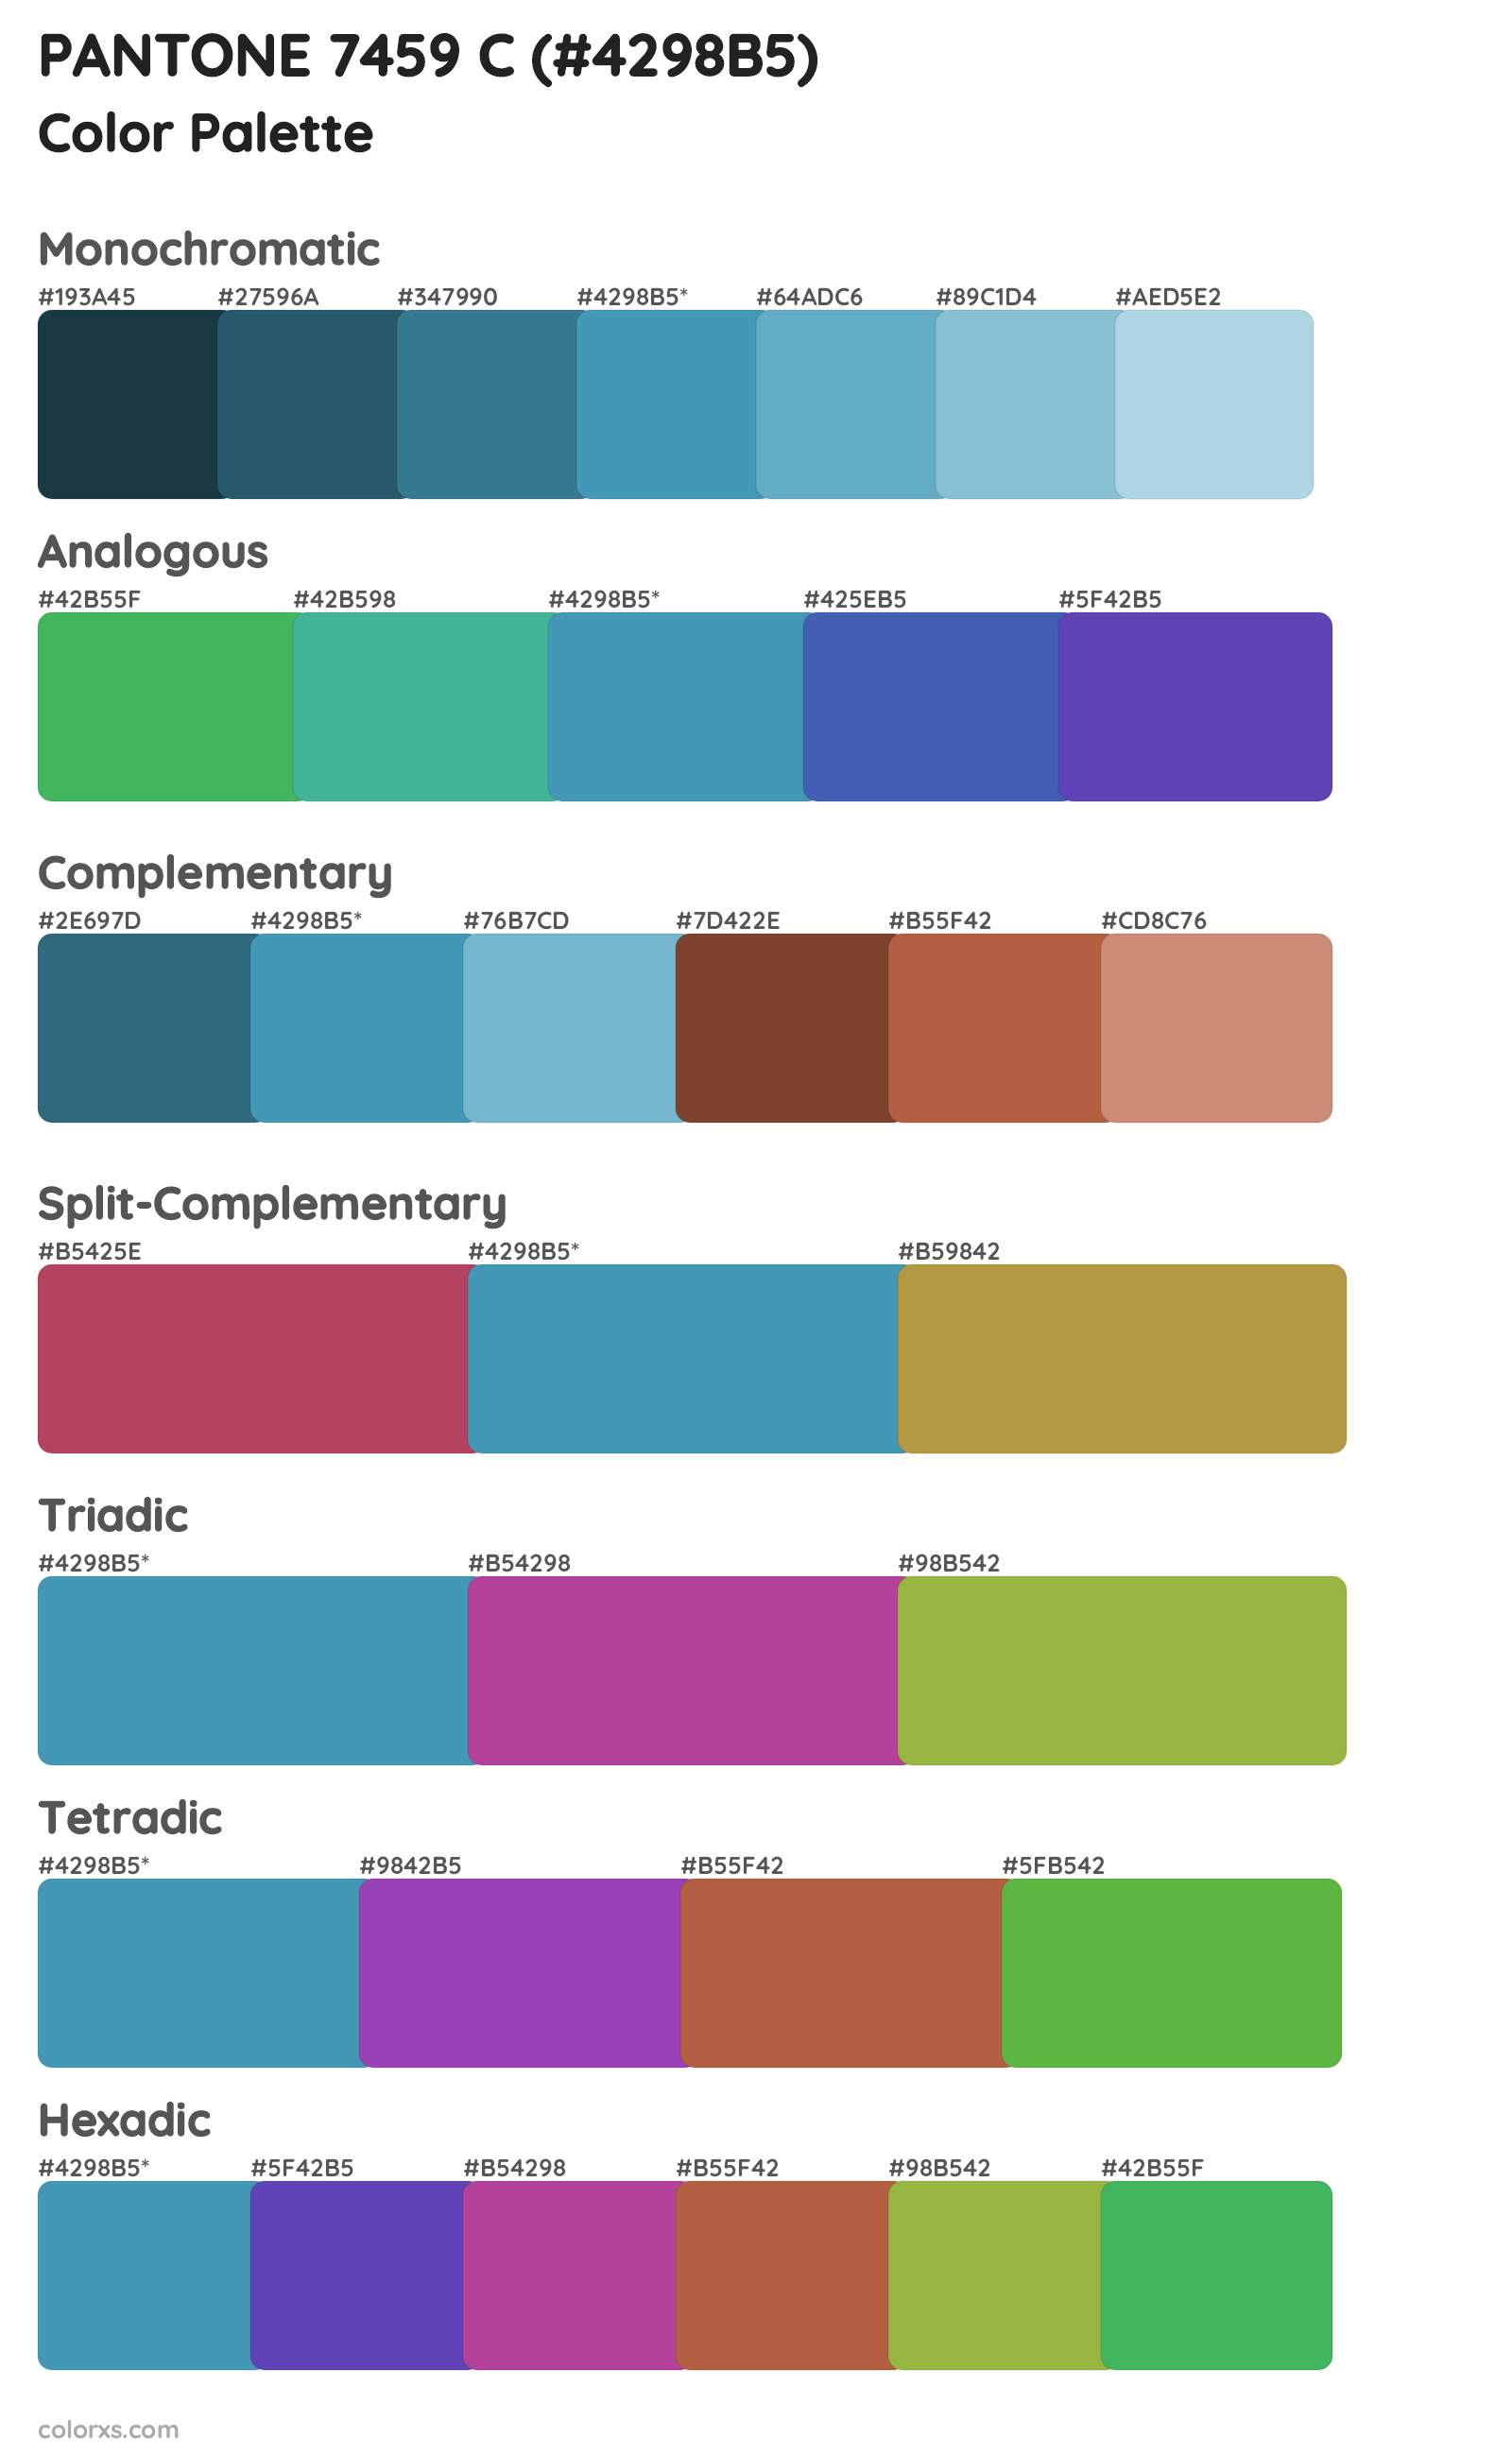 PANTONE 7459 C Color Scheme Palettes